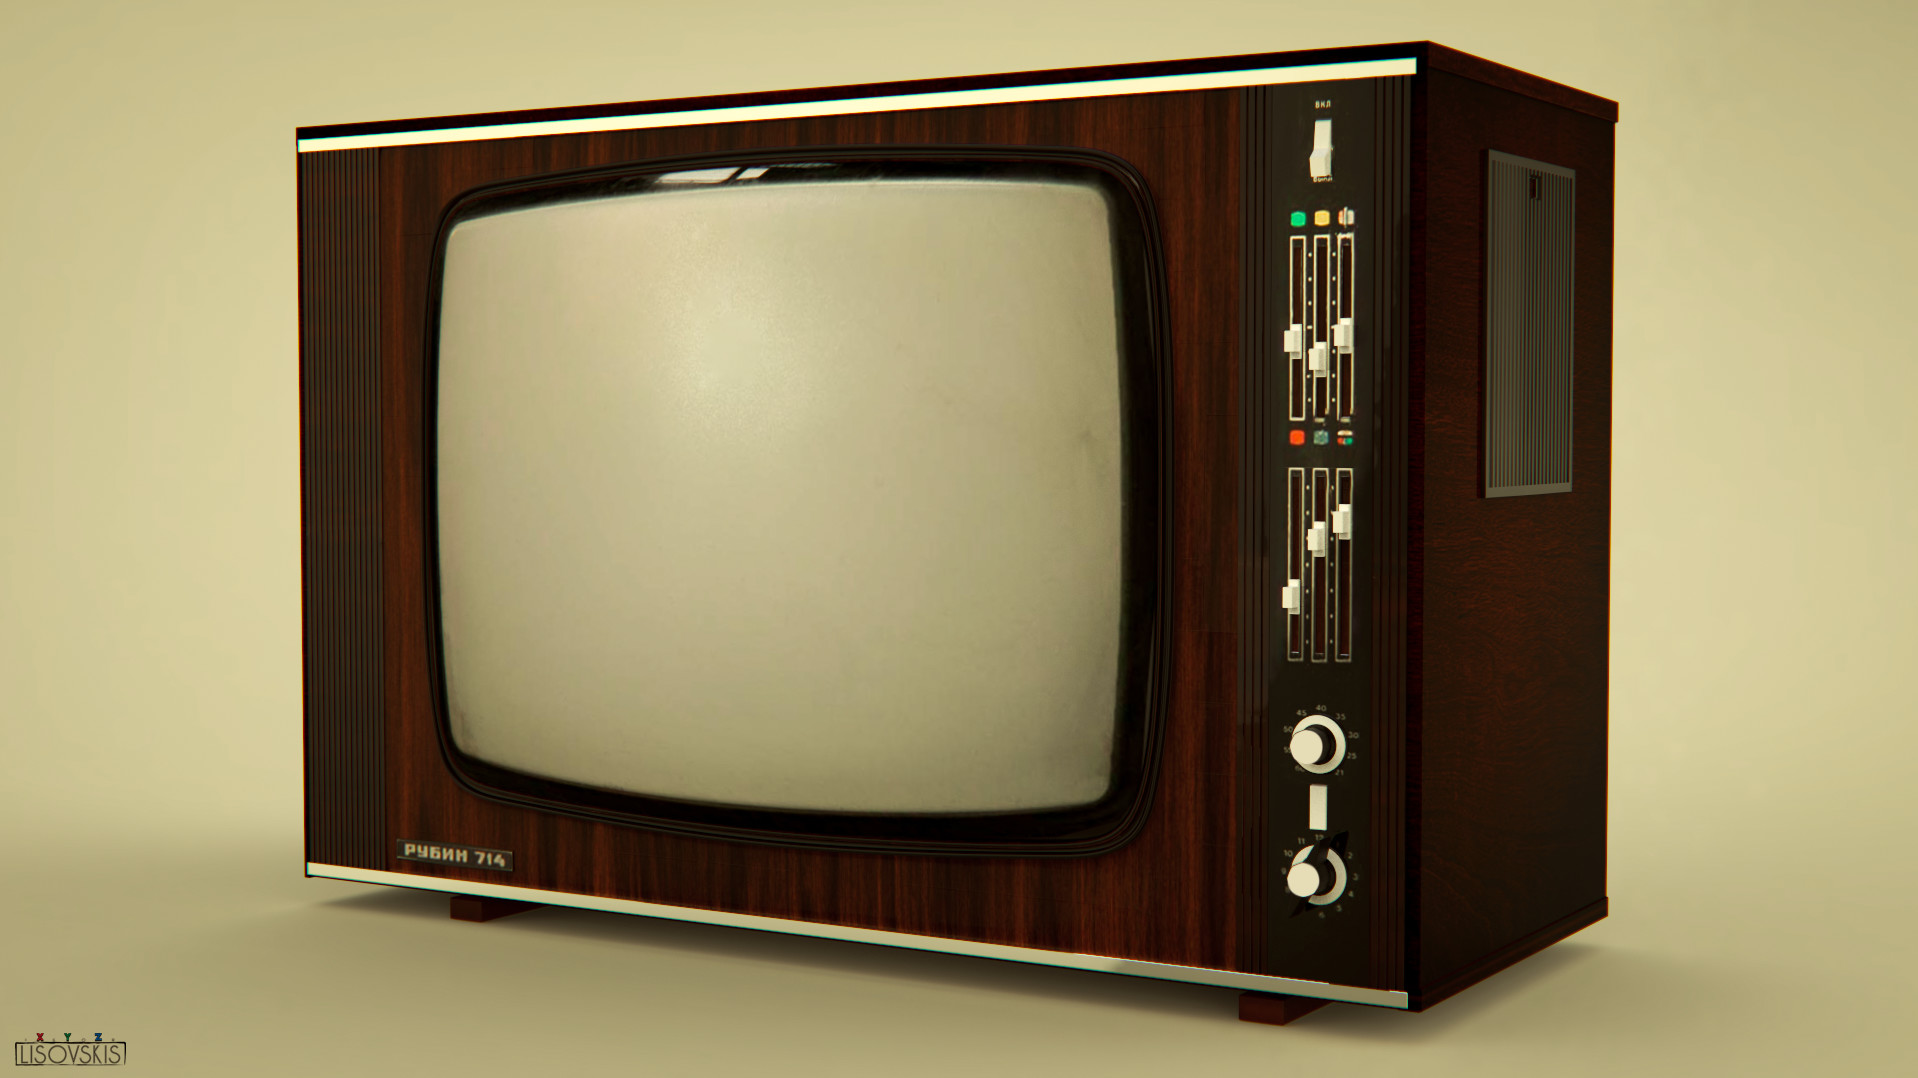 Телевизор рубин купить. Телевизор Рубин 714. Советский цветной телевизор«Рубин-714. Советский телевизор Рубин 714. Цветной телевизор Рубин 714.